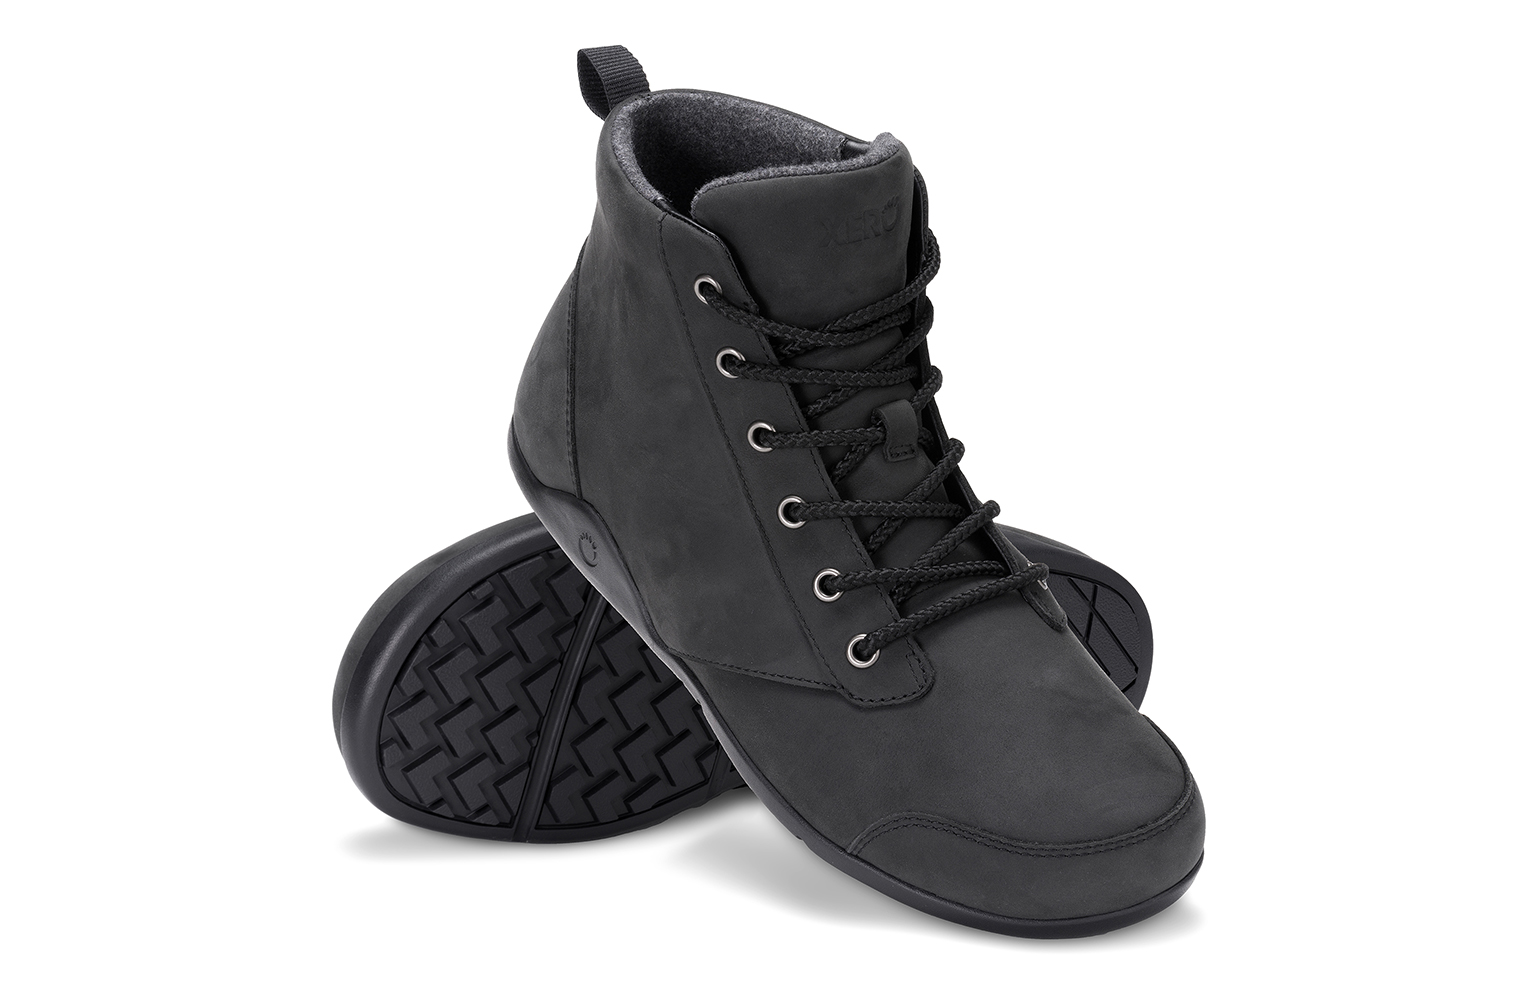 Xero Shoes Denver Leather Black men’s boots